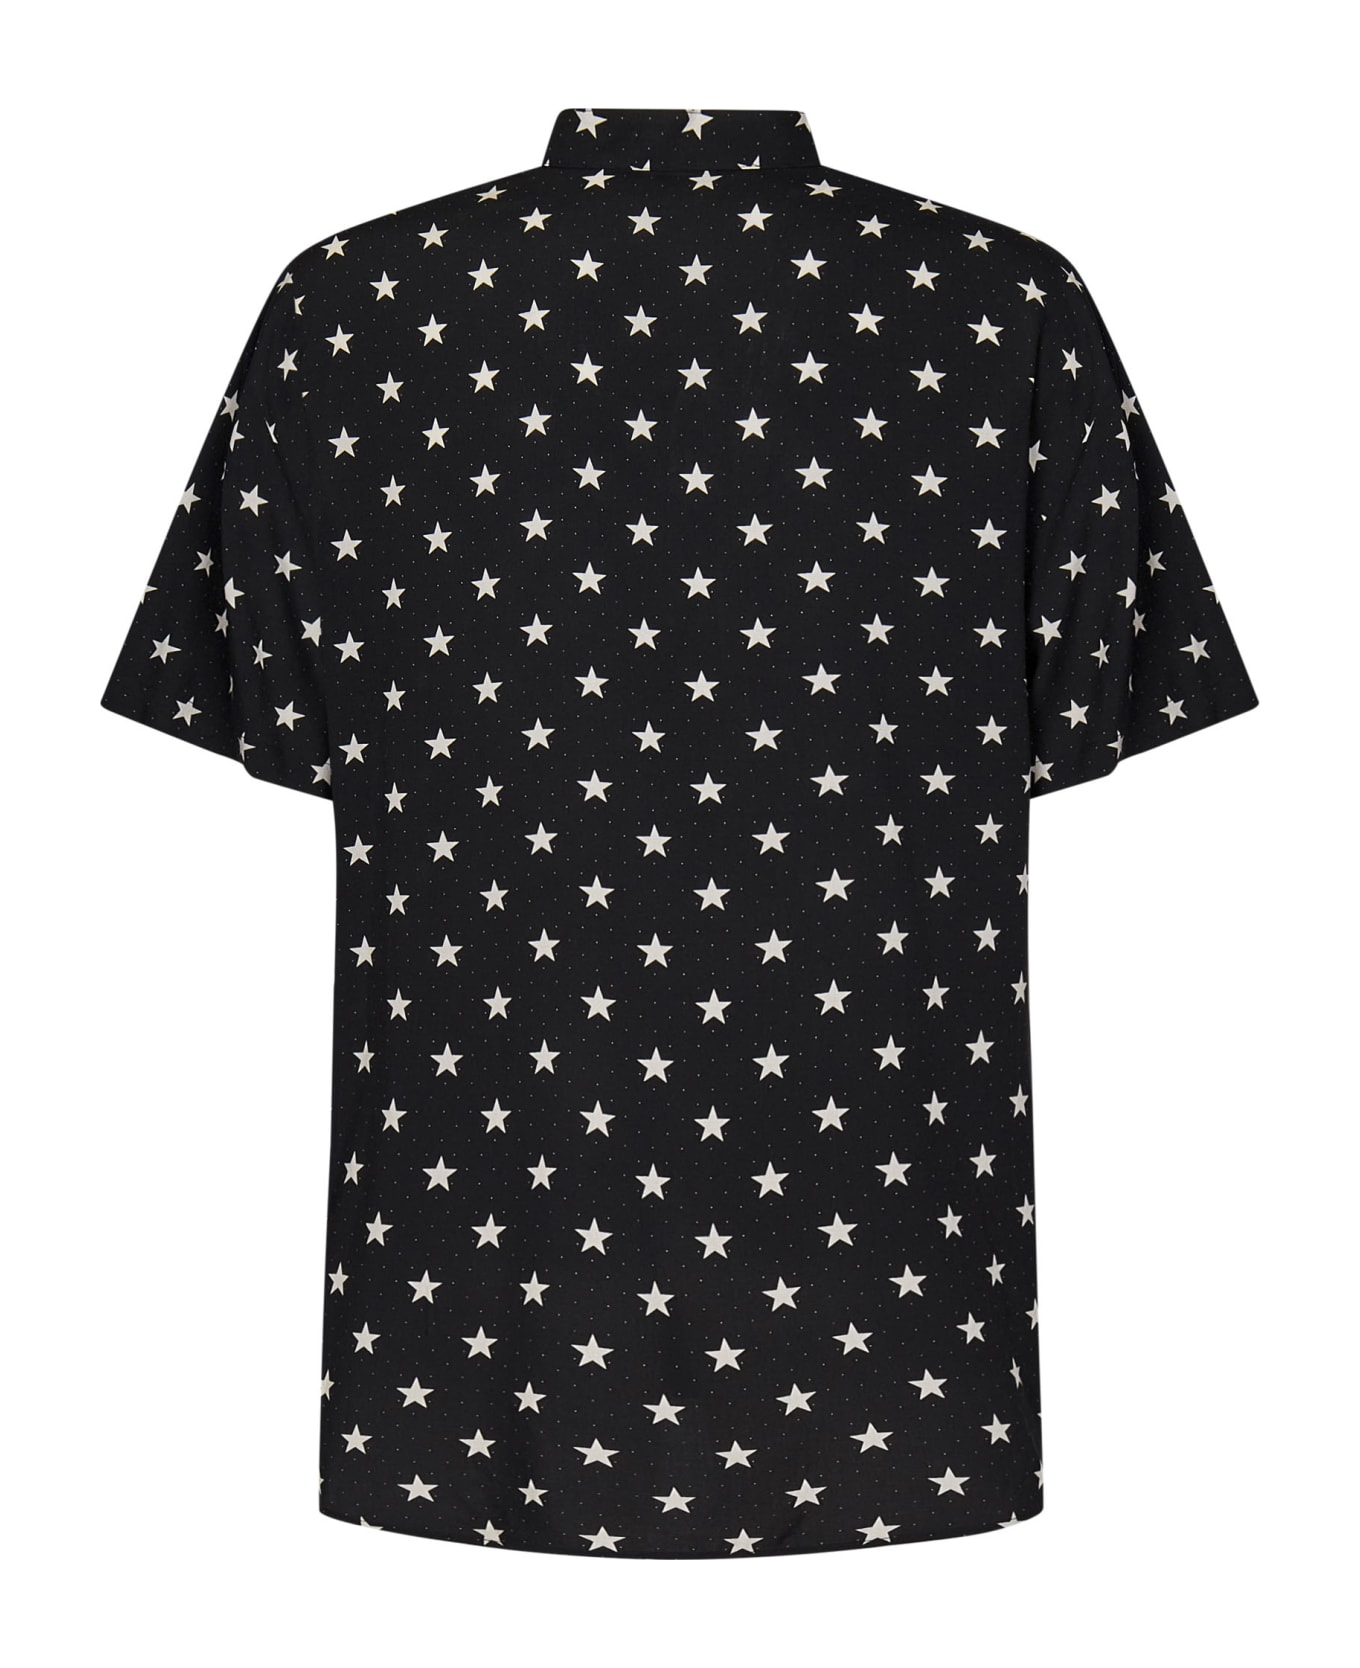 Balmain Star Print Shirt - NERO AVORIO